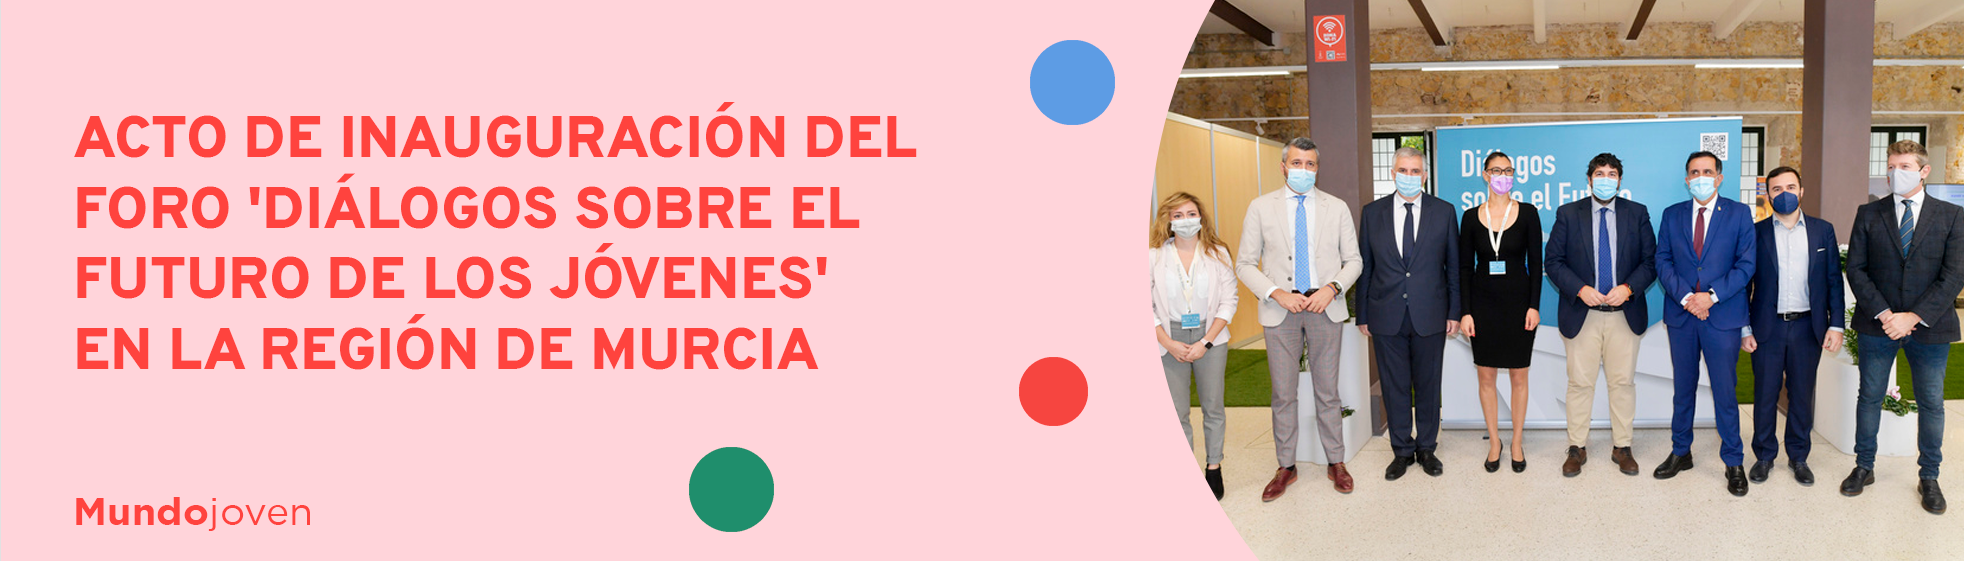 Acto de inauguración del foro 'Diálogos sobre el futuro de los jóvenes' en la Región de Murcia